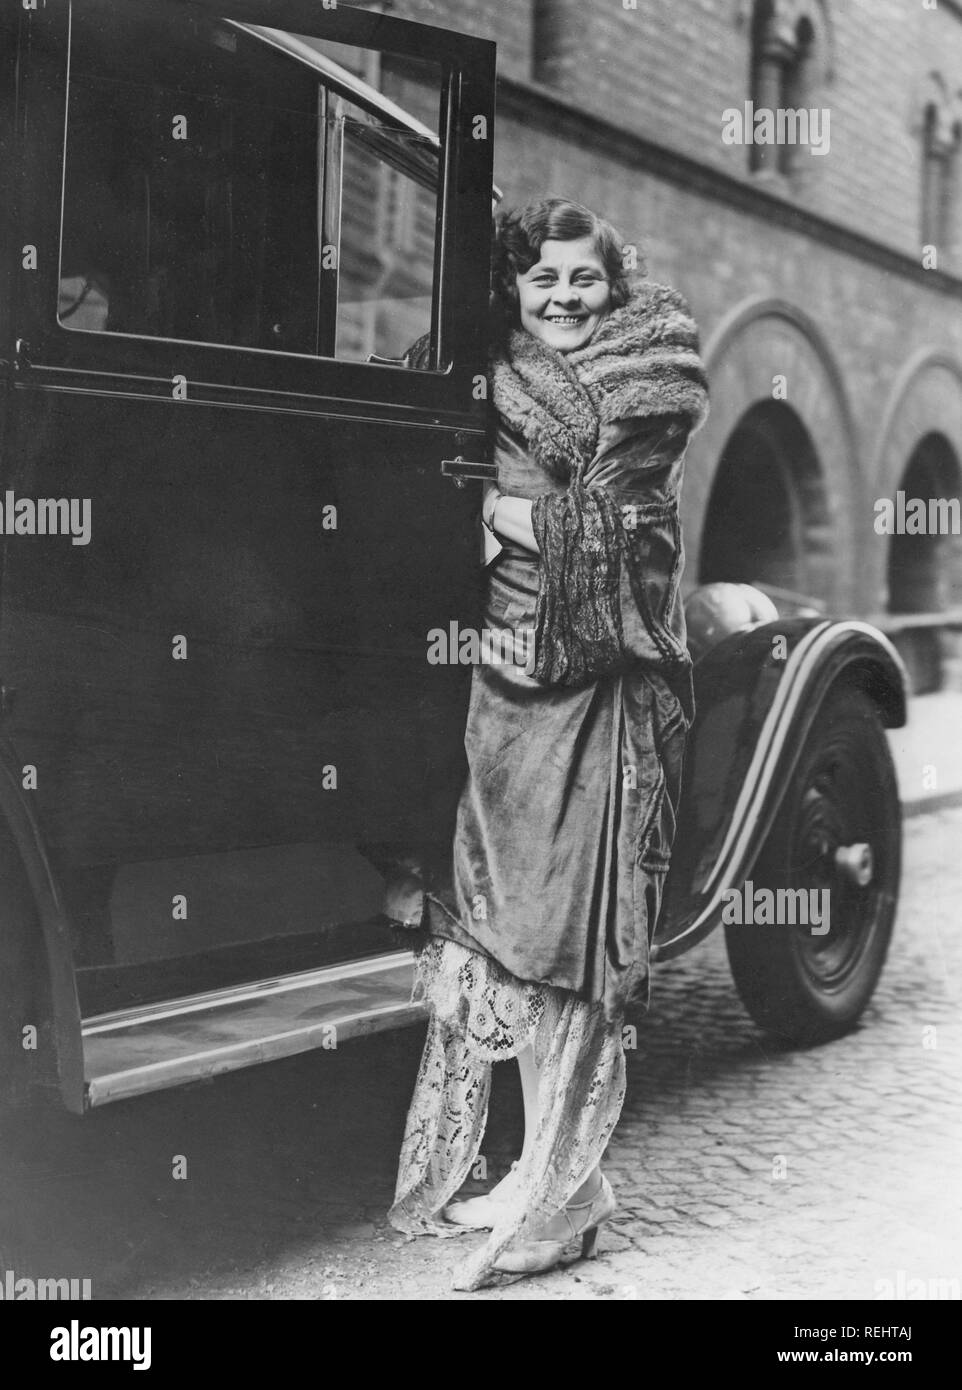 Damenmode in den 1920er Jahren. Eine junge Frau in einem typischen 20er  Jahre Kleidung stand neben einem Auto, die Tür zu öffnen. Sie ist die  schwedische Opernsängerin Marie Sundelius, 1884-1858. Sopran Sängerin,